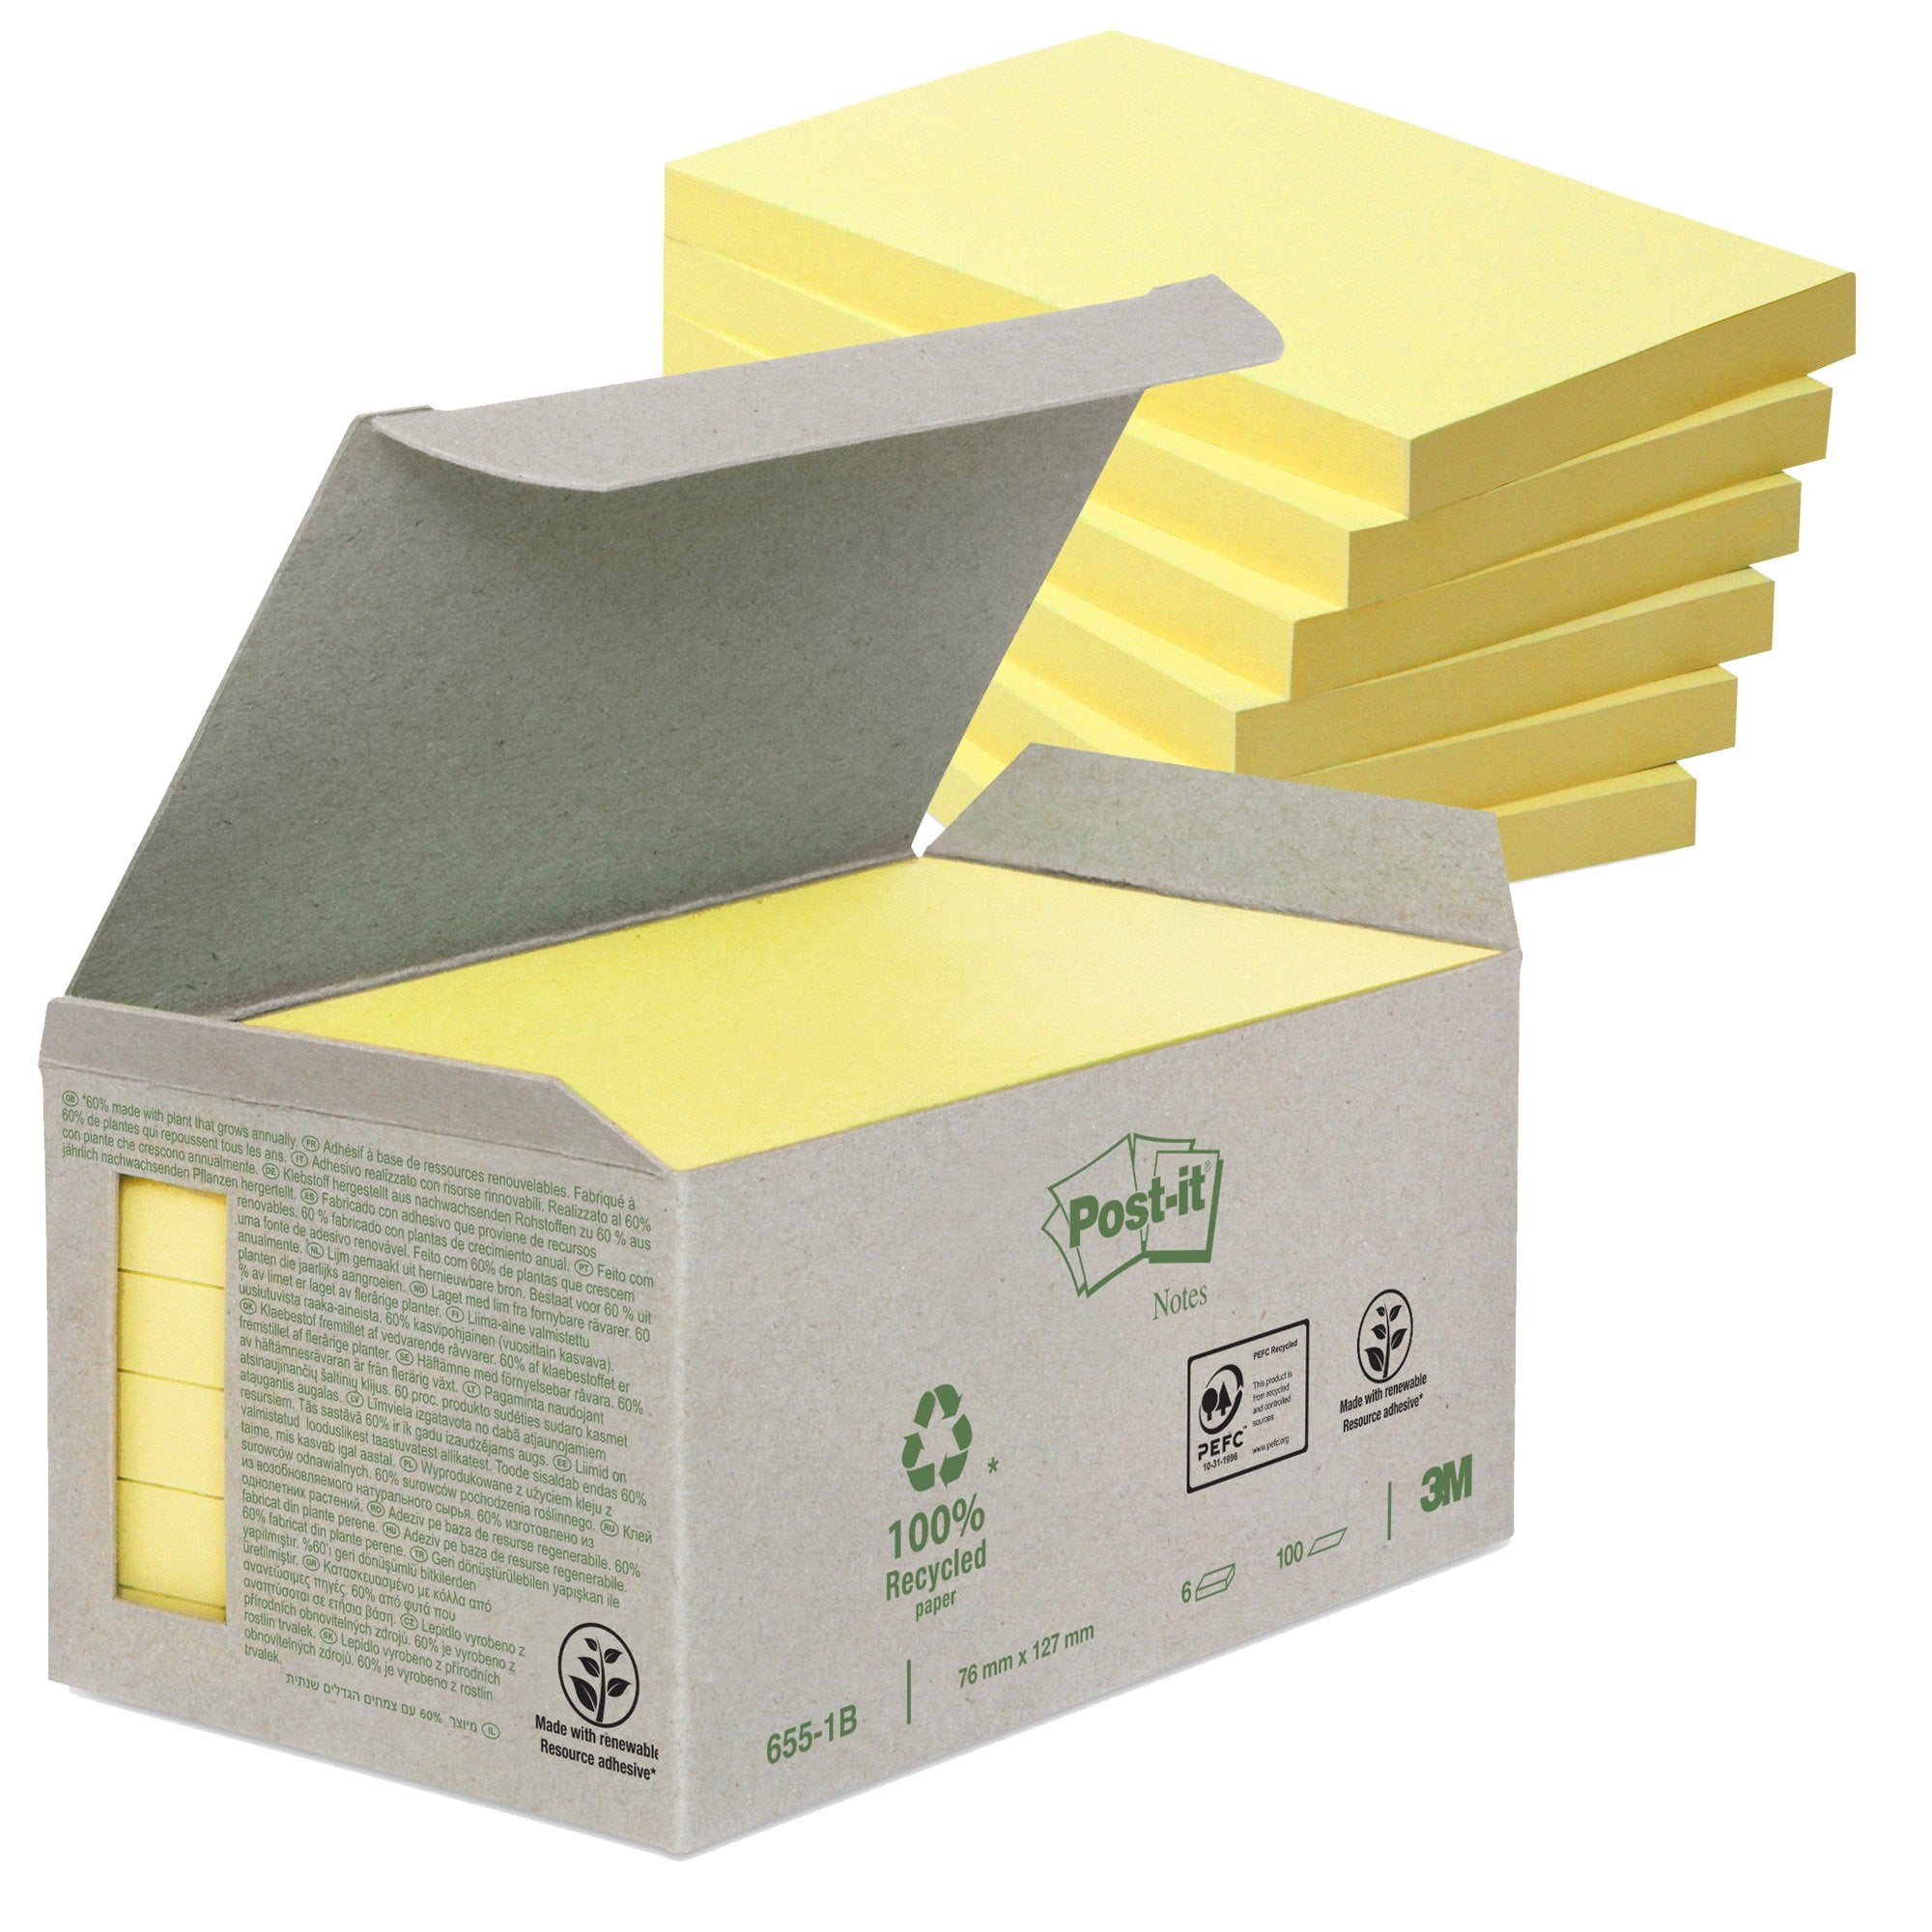 post-it-blocco-100foglietti-notes-green-76x127mm-655-1b-giallo